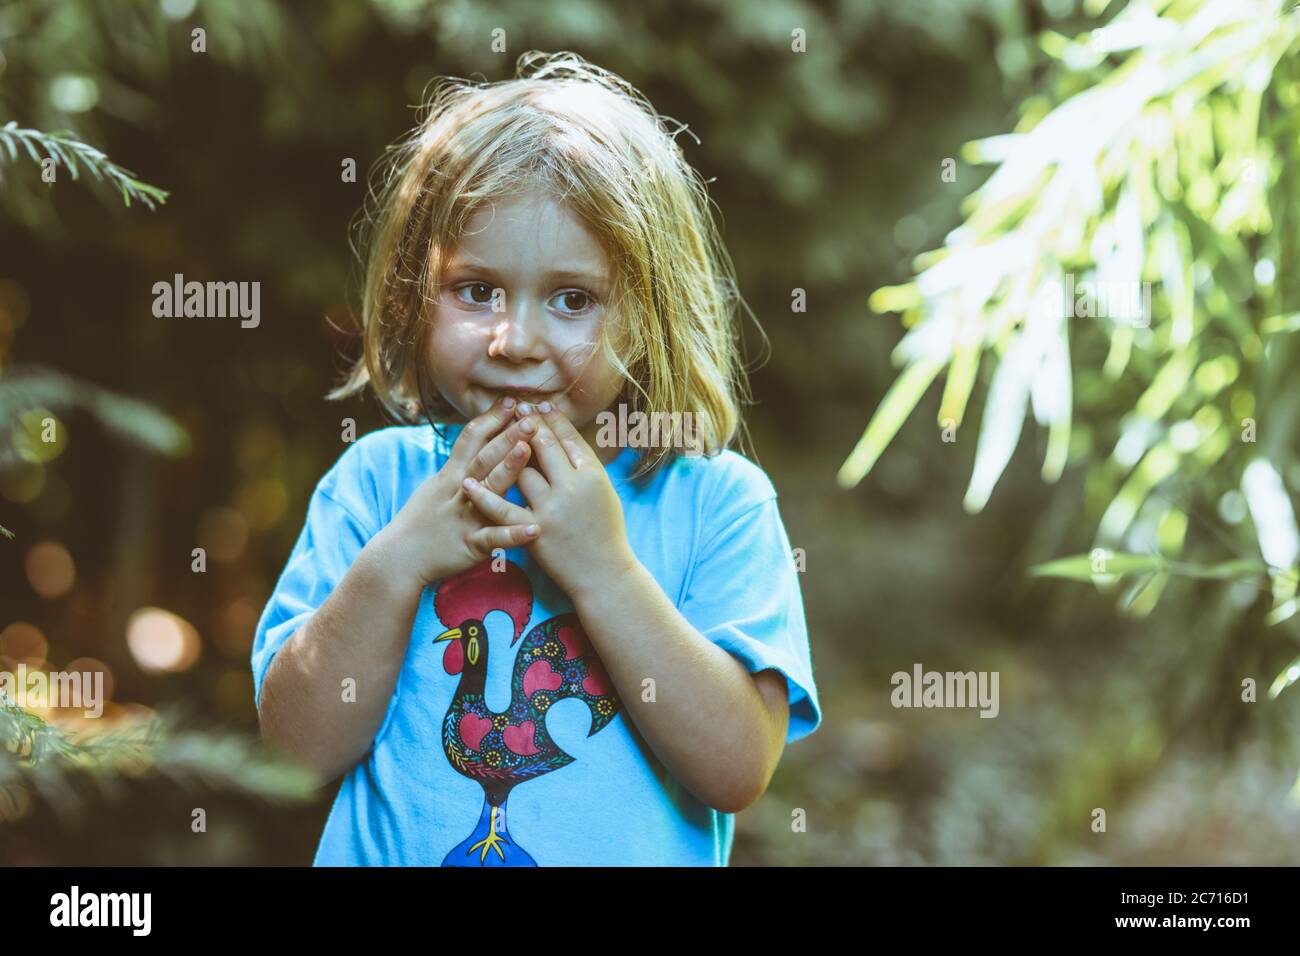 Portrait eines kleinen Mädchens mit unordentlichen Haaren. Gelassenheit und Unschuld Konzept. Stockfoto